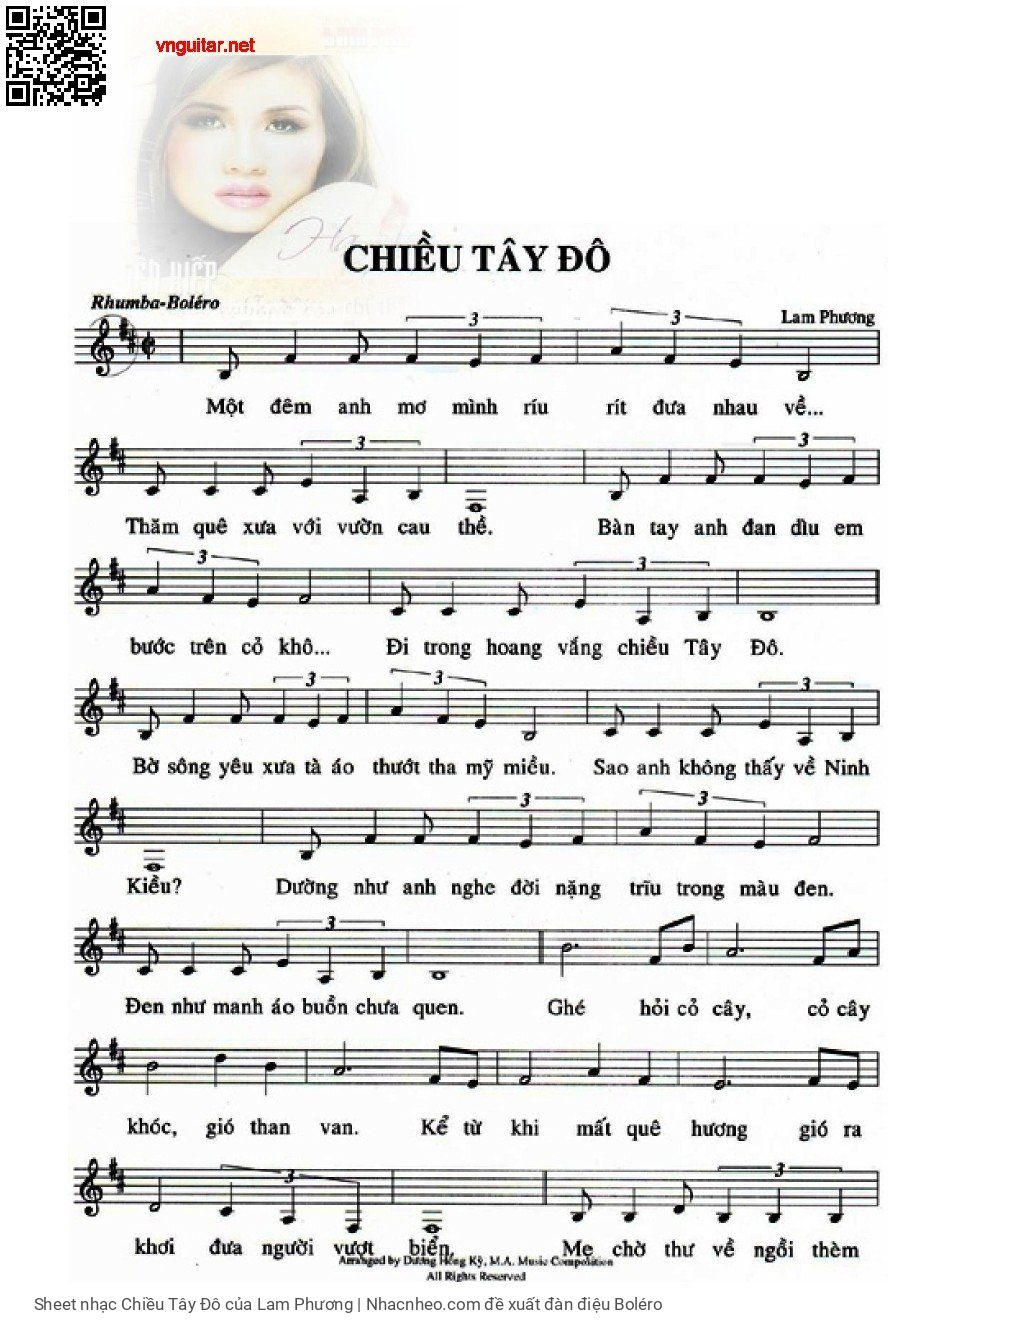 Sheet nhạc Chiều Tây Đô - Lam Phương